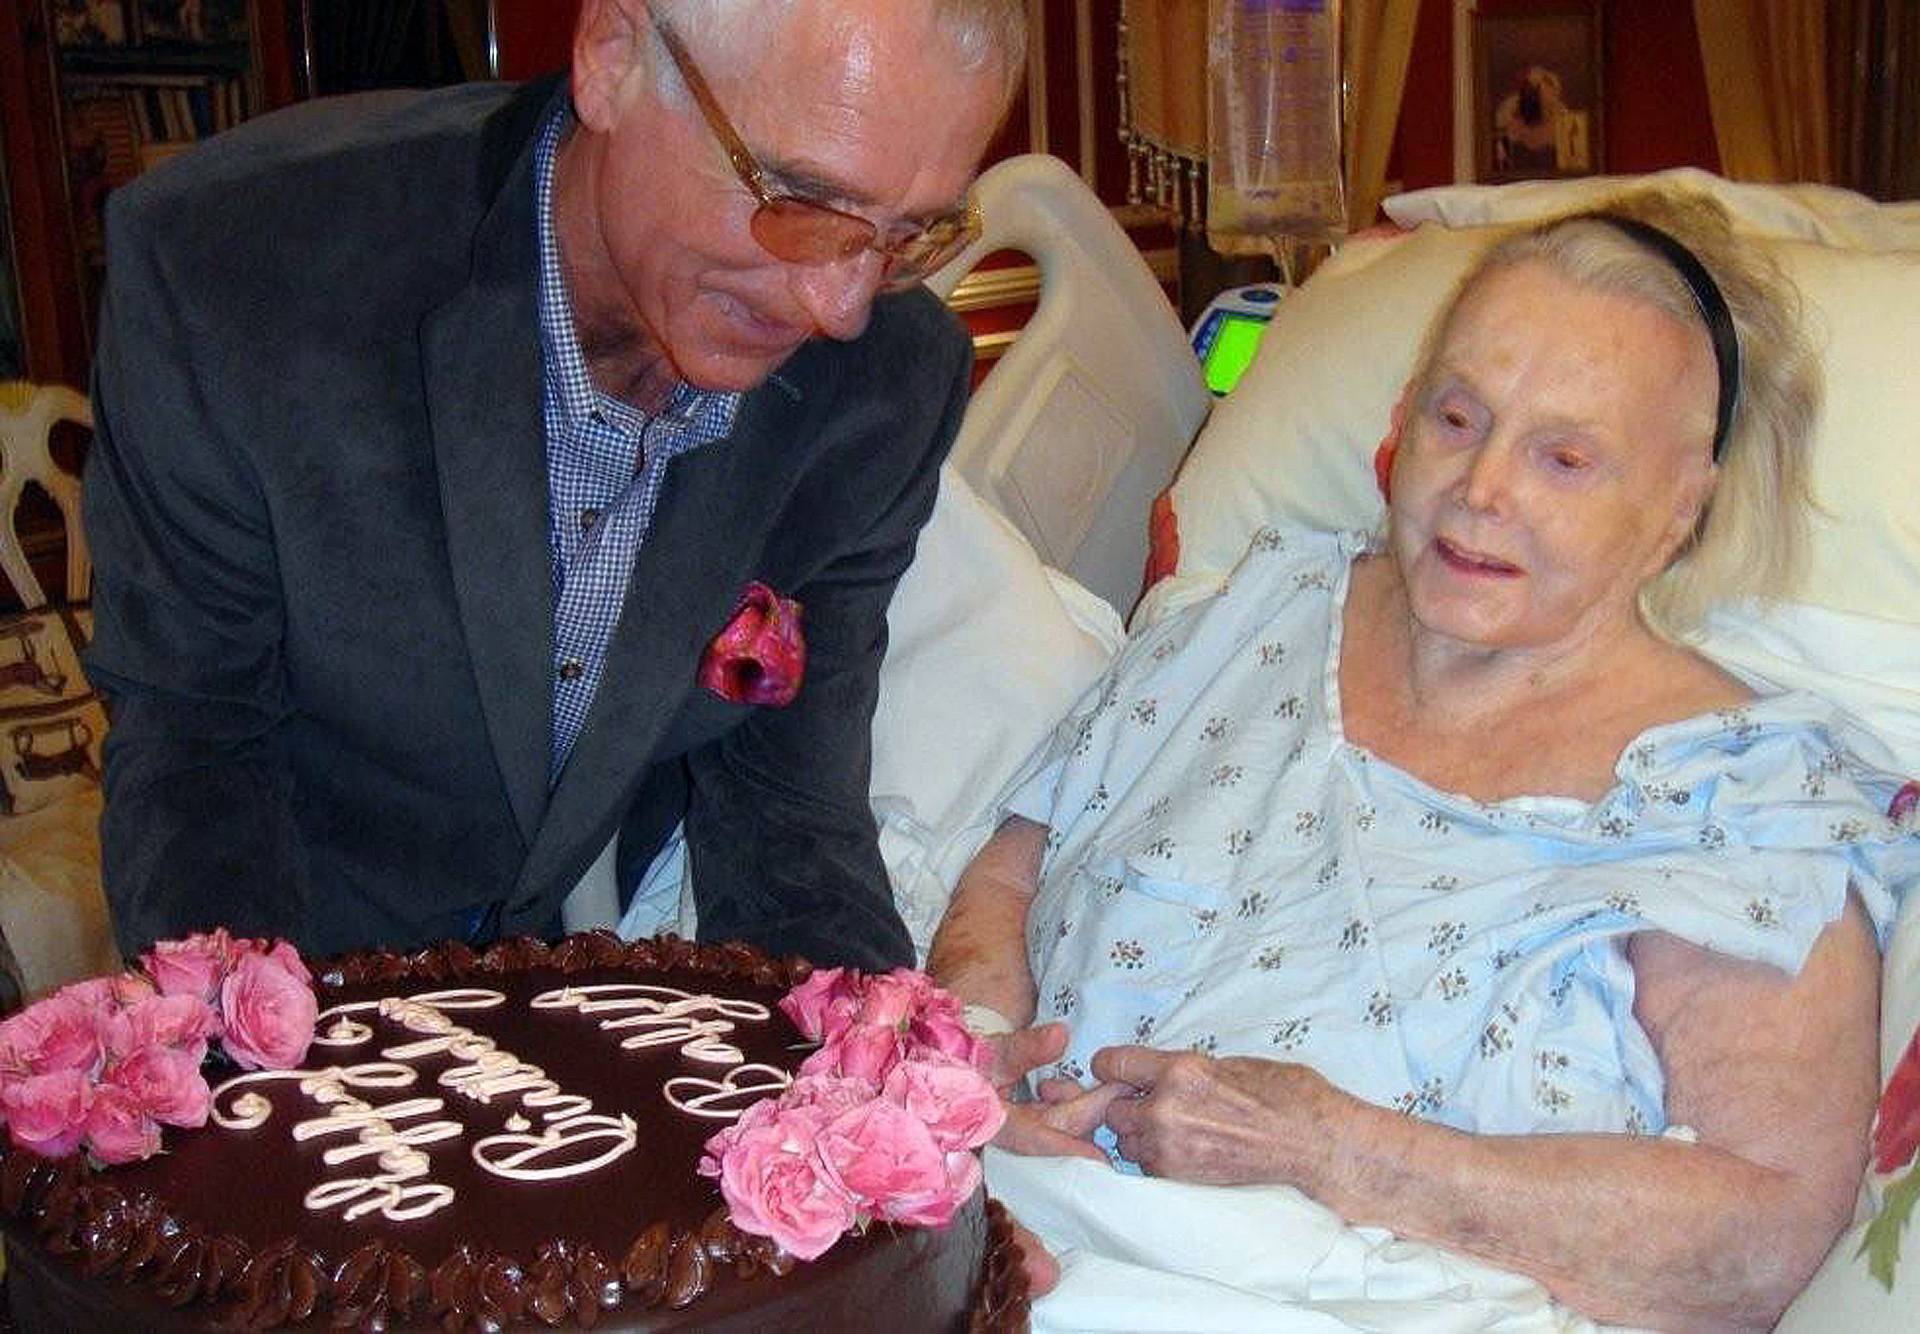 Zsa Zsa Gabor feiert 94. Geburtstag gleich doppelt